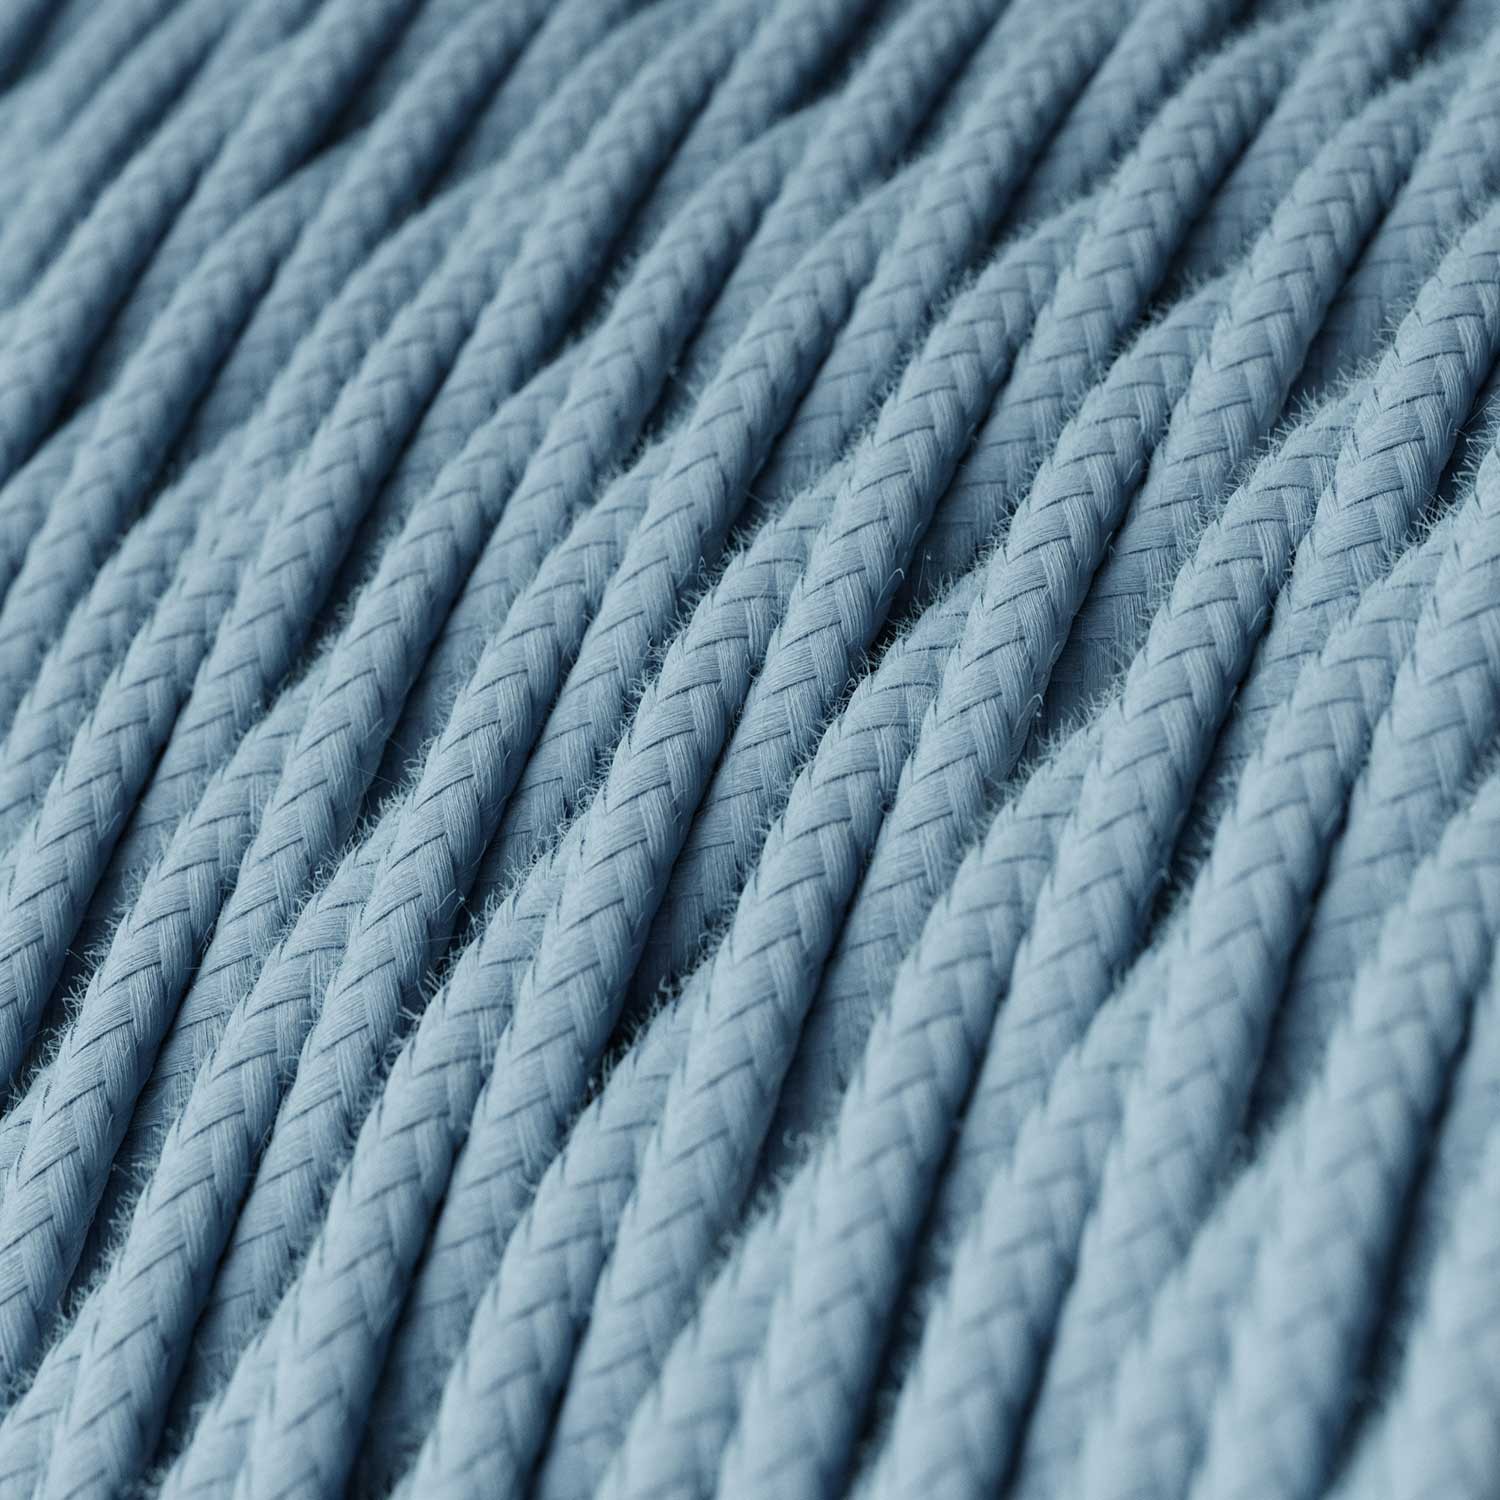 Textilkabel, ozeanblau, aus Baumwolle - Das Original von Creative-Cables - TC53 geflochten 2x0.75mm / 3x0.75mm